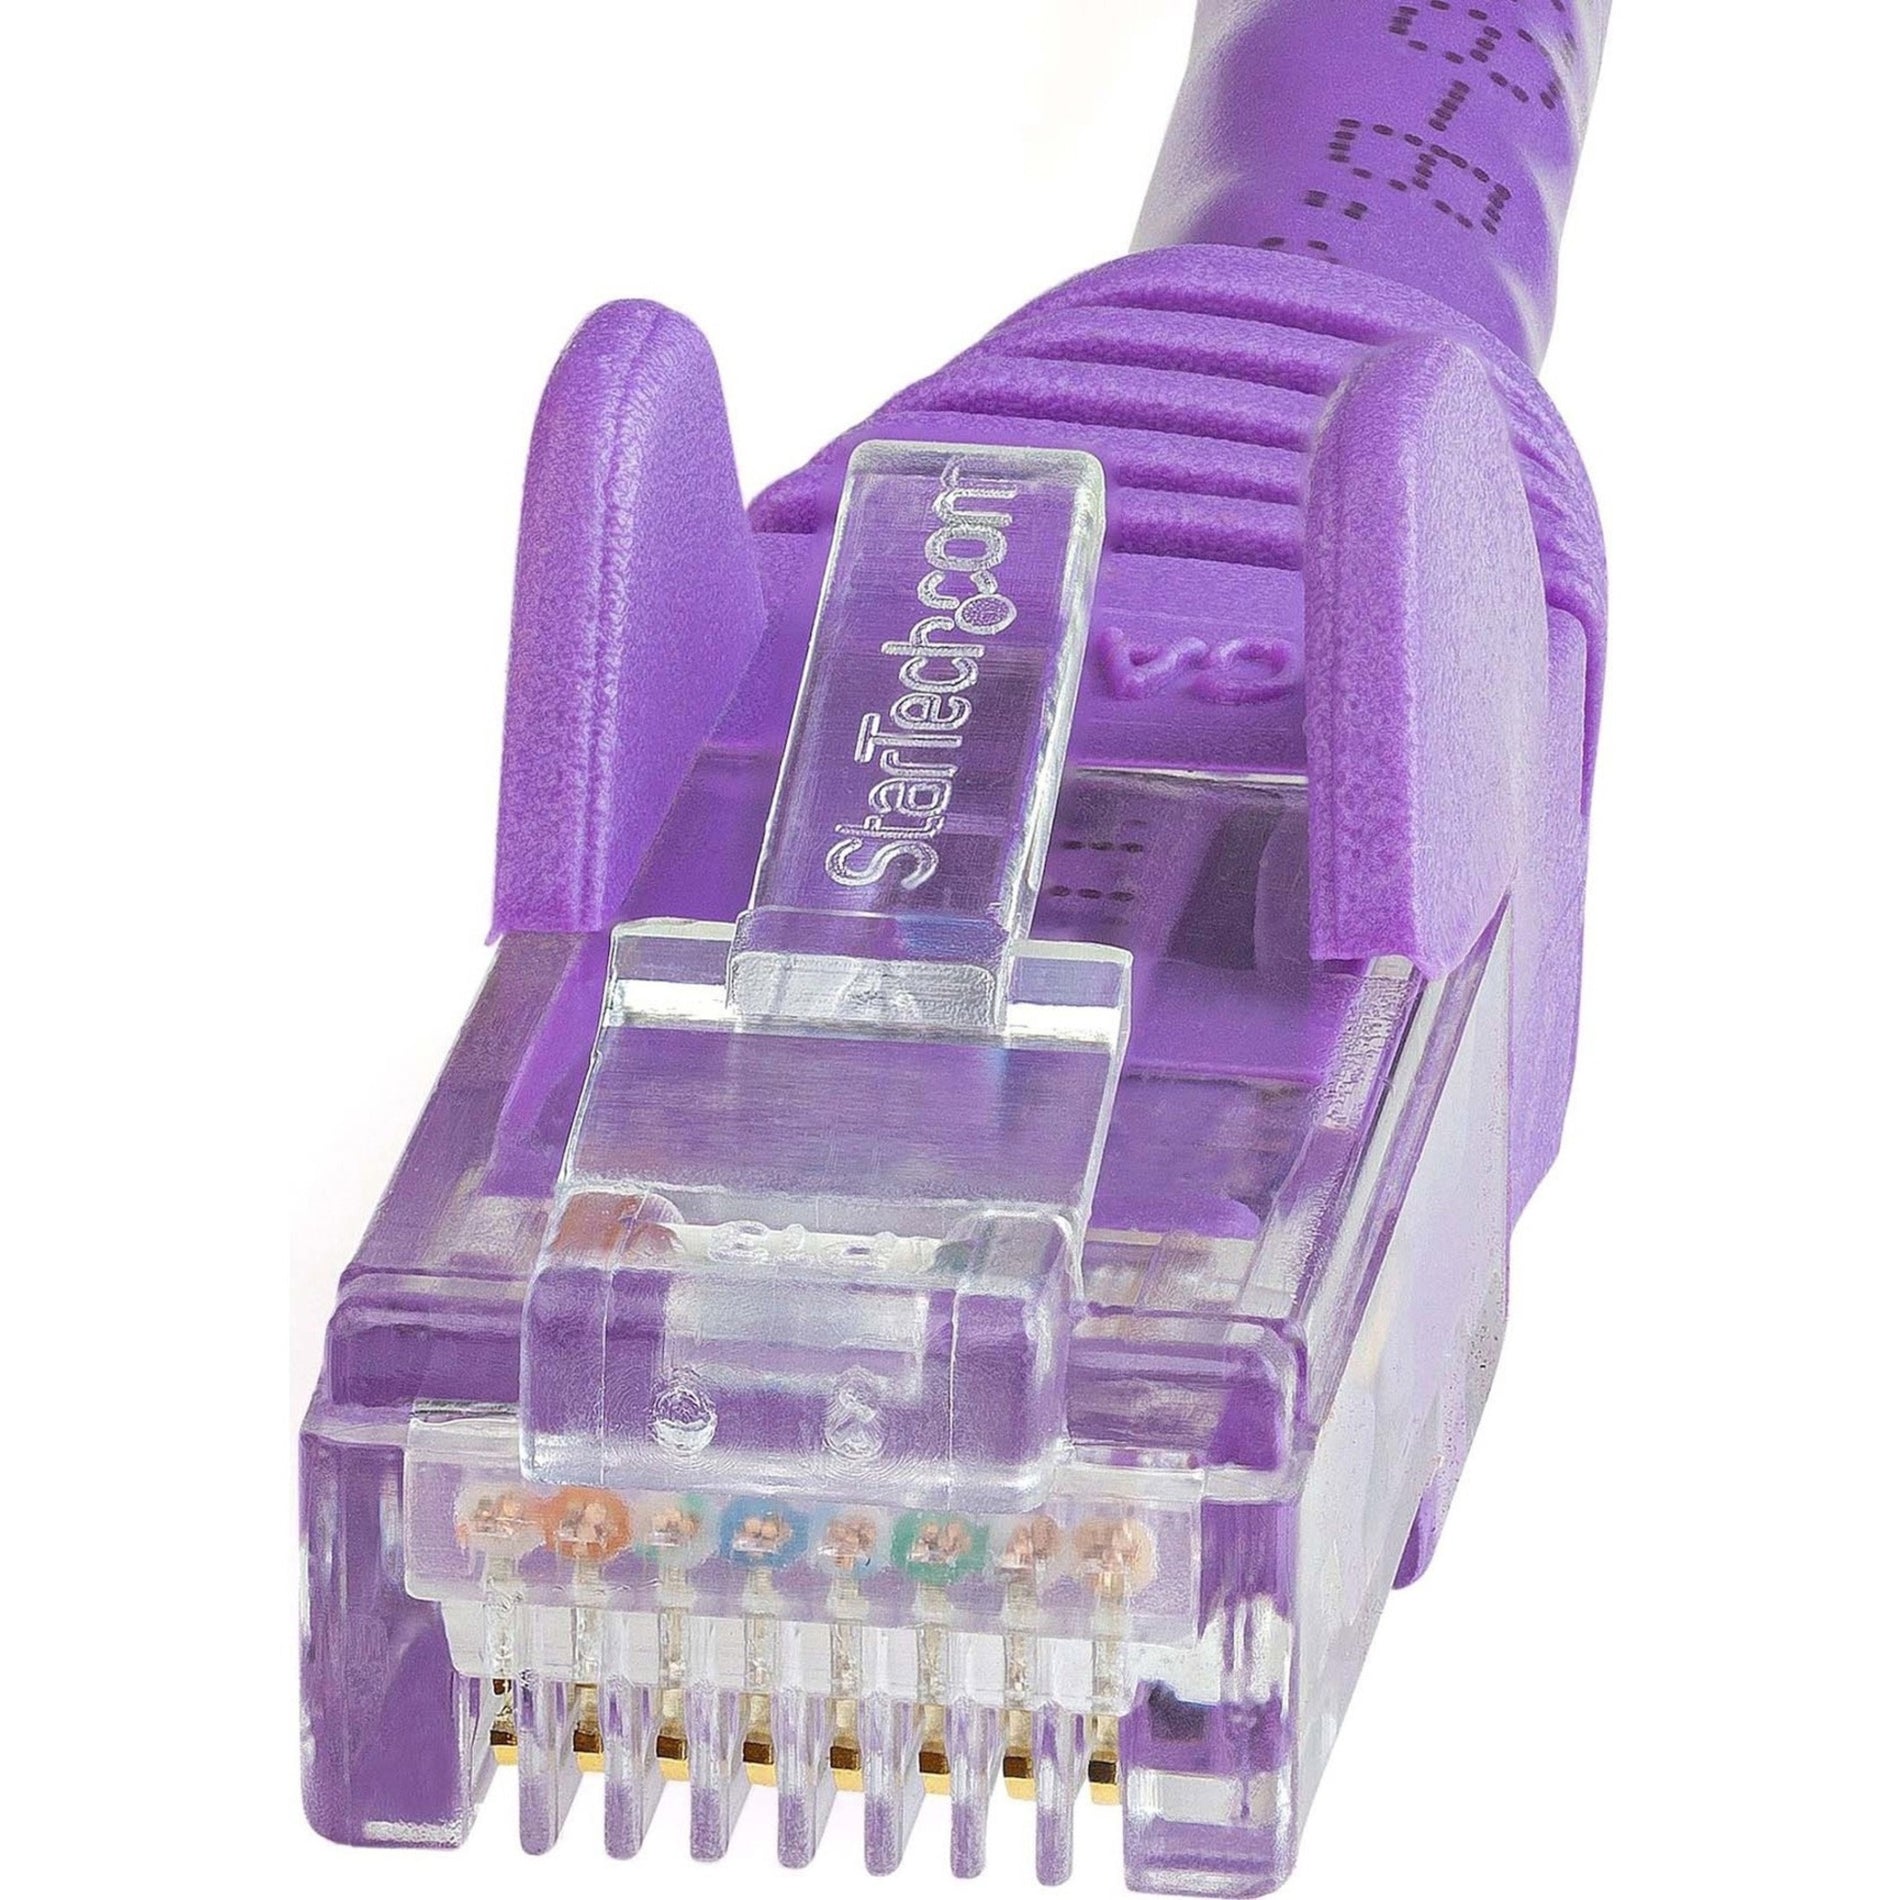 品牌名称：StarTech.com 产品名称：紫色无扣Cat6 UTP网线，100英尺，防磨损，10 Gbit/s数据传输速率